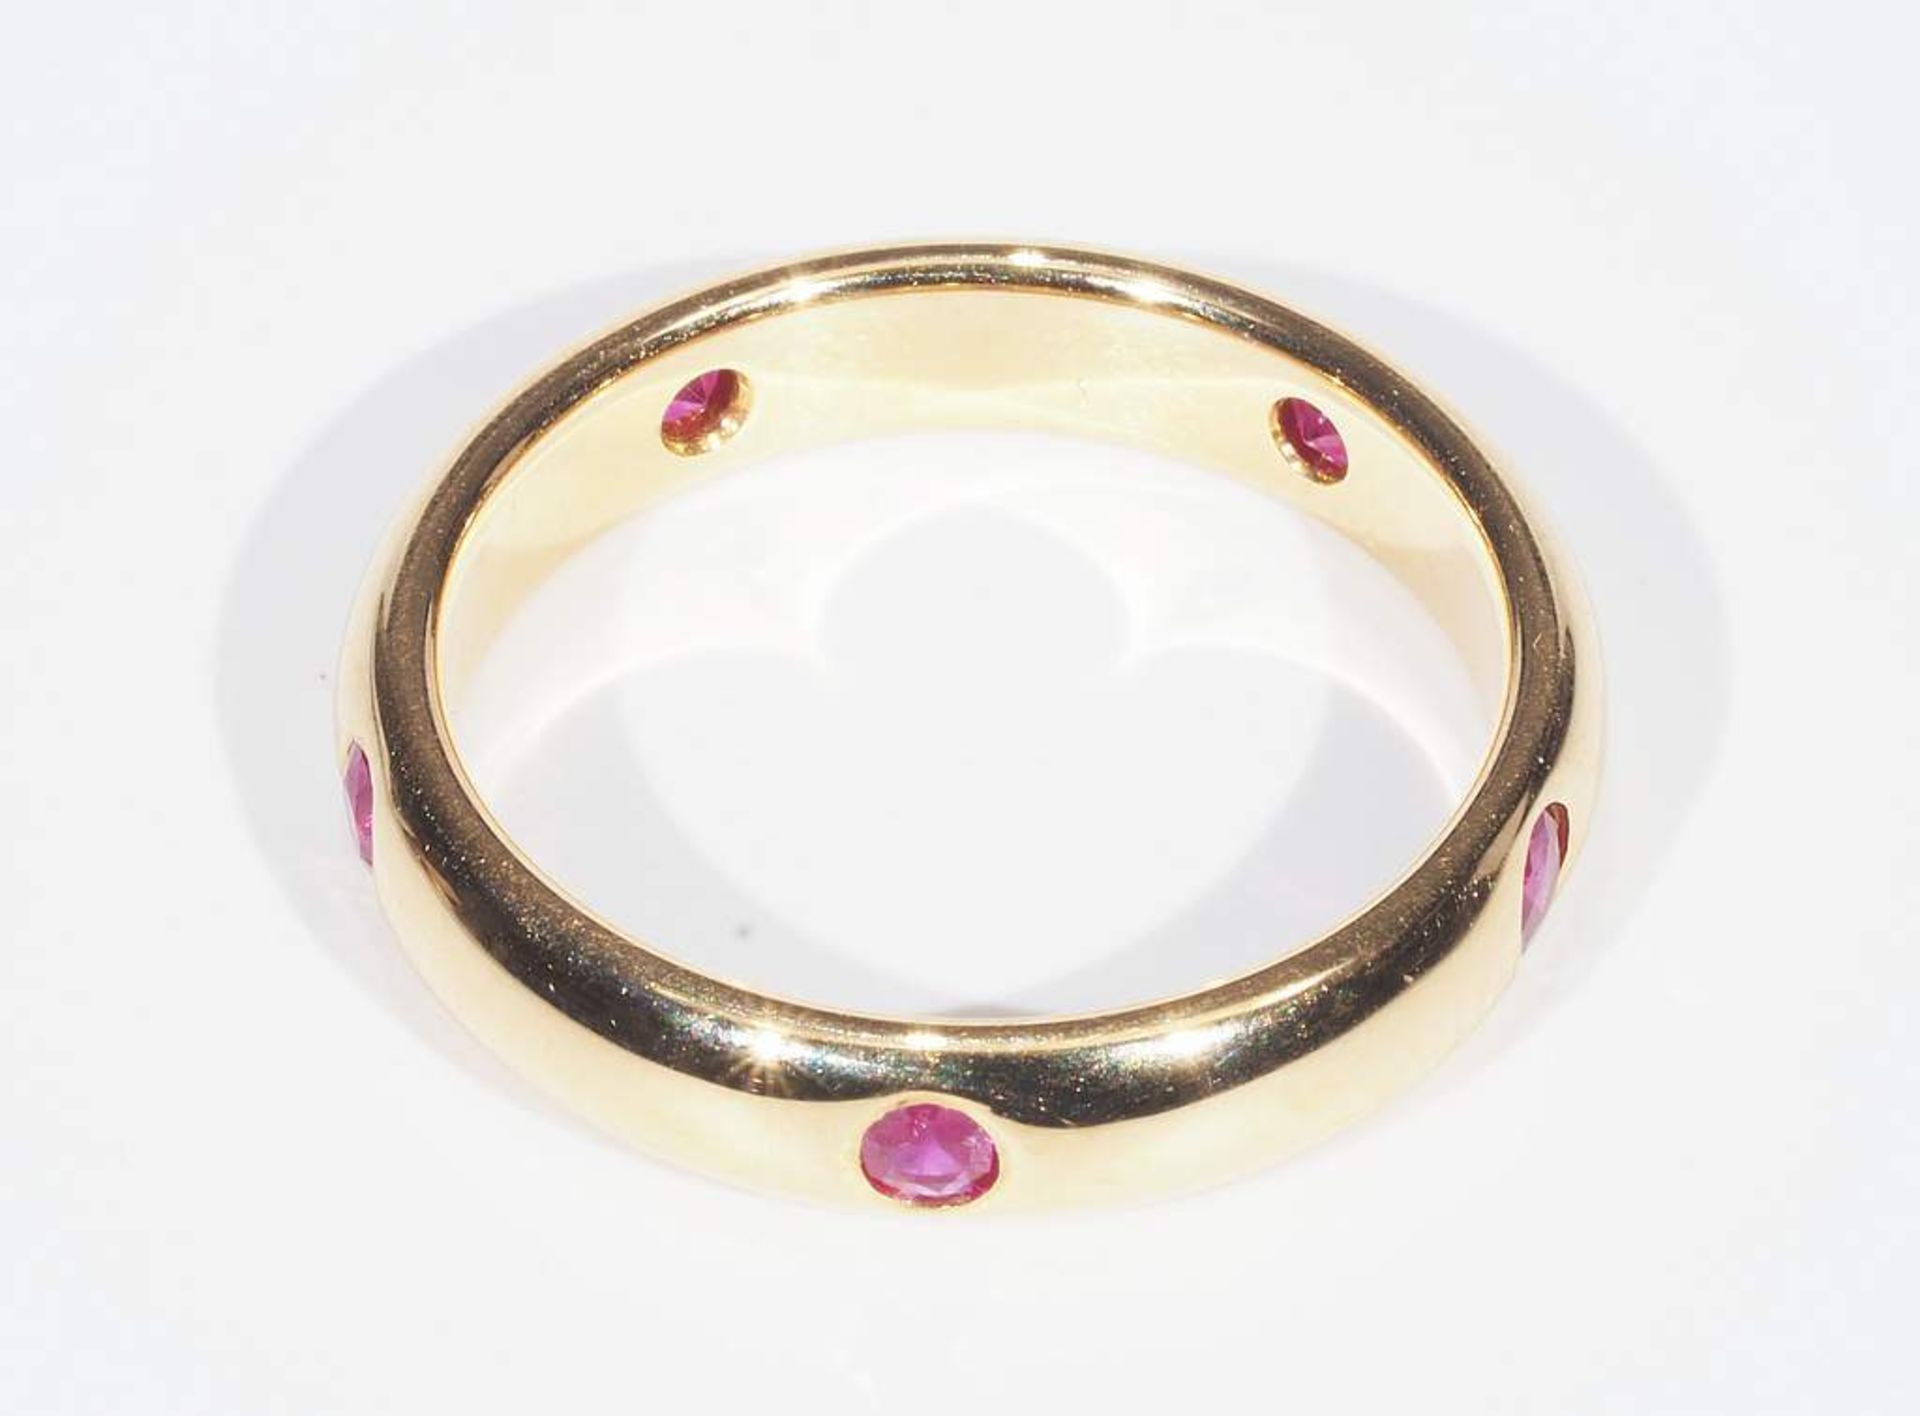 Memoire-Ring, CARTIER Paris. Ringschiene besetzt mit fünf Rubinen, gepunzt: 750 - Cartier - 1992 - - Image 4 of 8